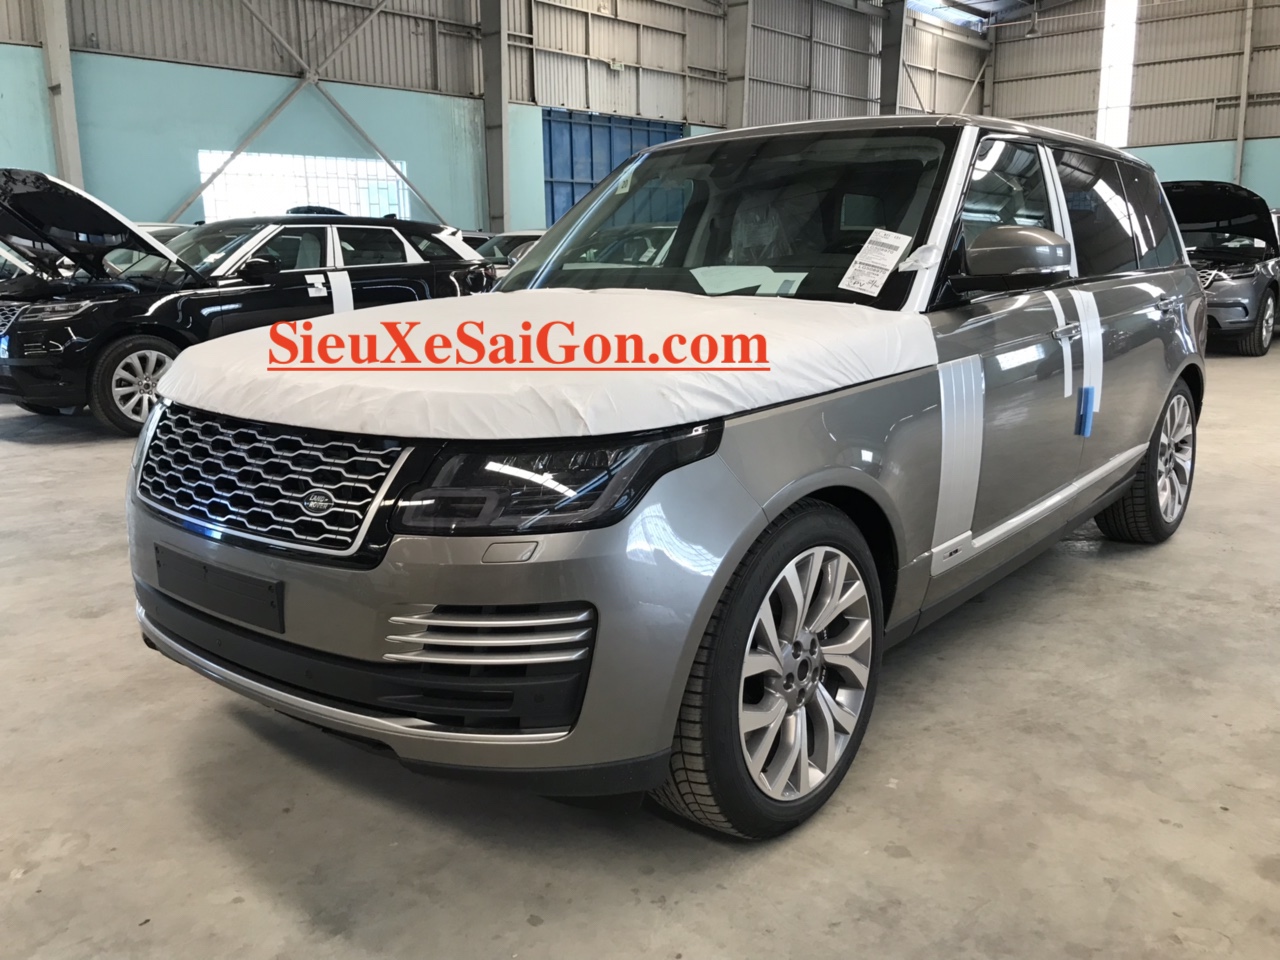 Siêu Phẩm SUV Range Rover LWB Mới 5 Chỗ Đời 2018 Model 2019 Màu Bạc ÁNh kim vừa về việt nam với giá trên 10 tỷ đồng có gì mới và đặc biệt